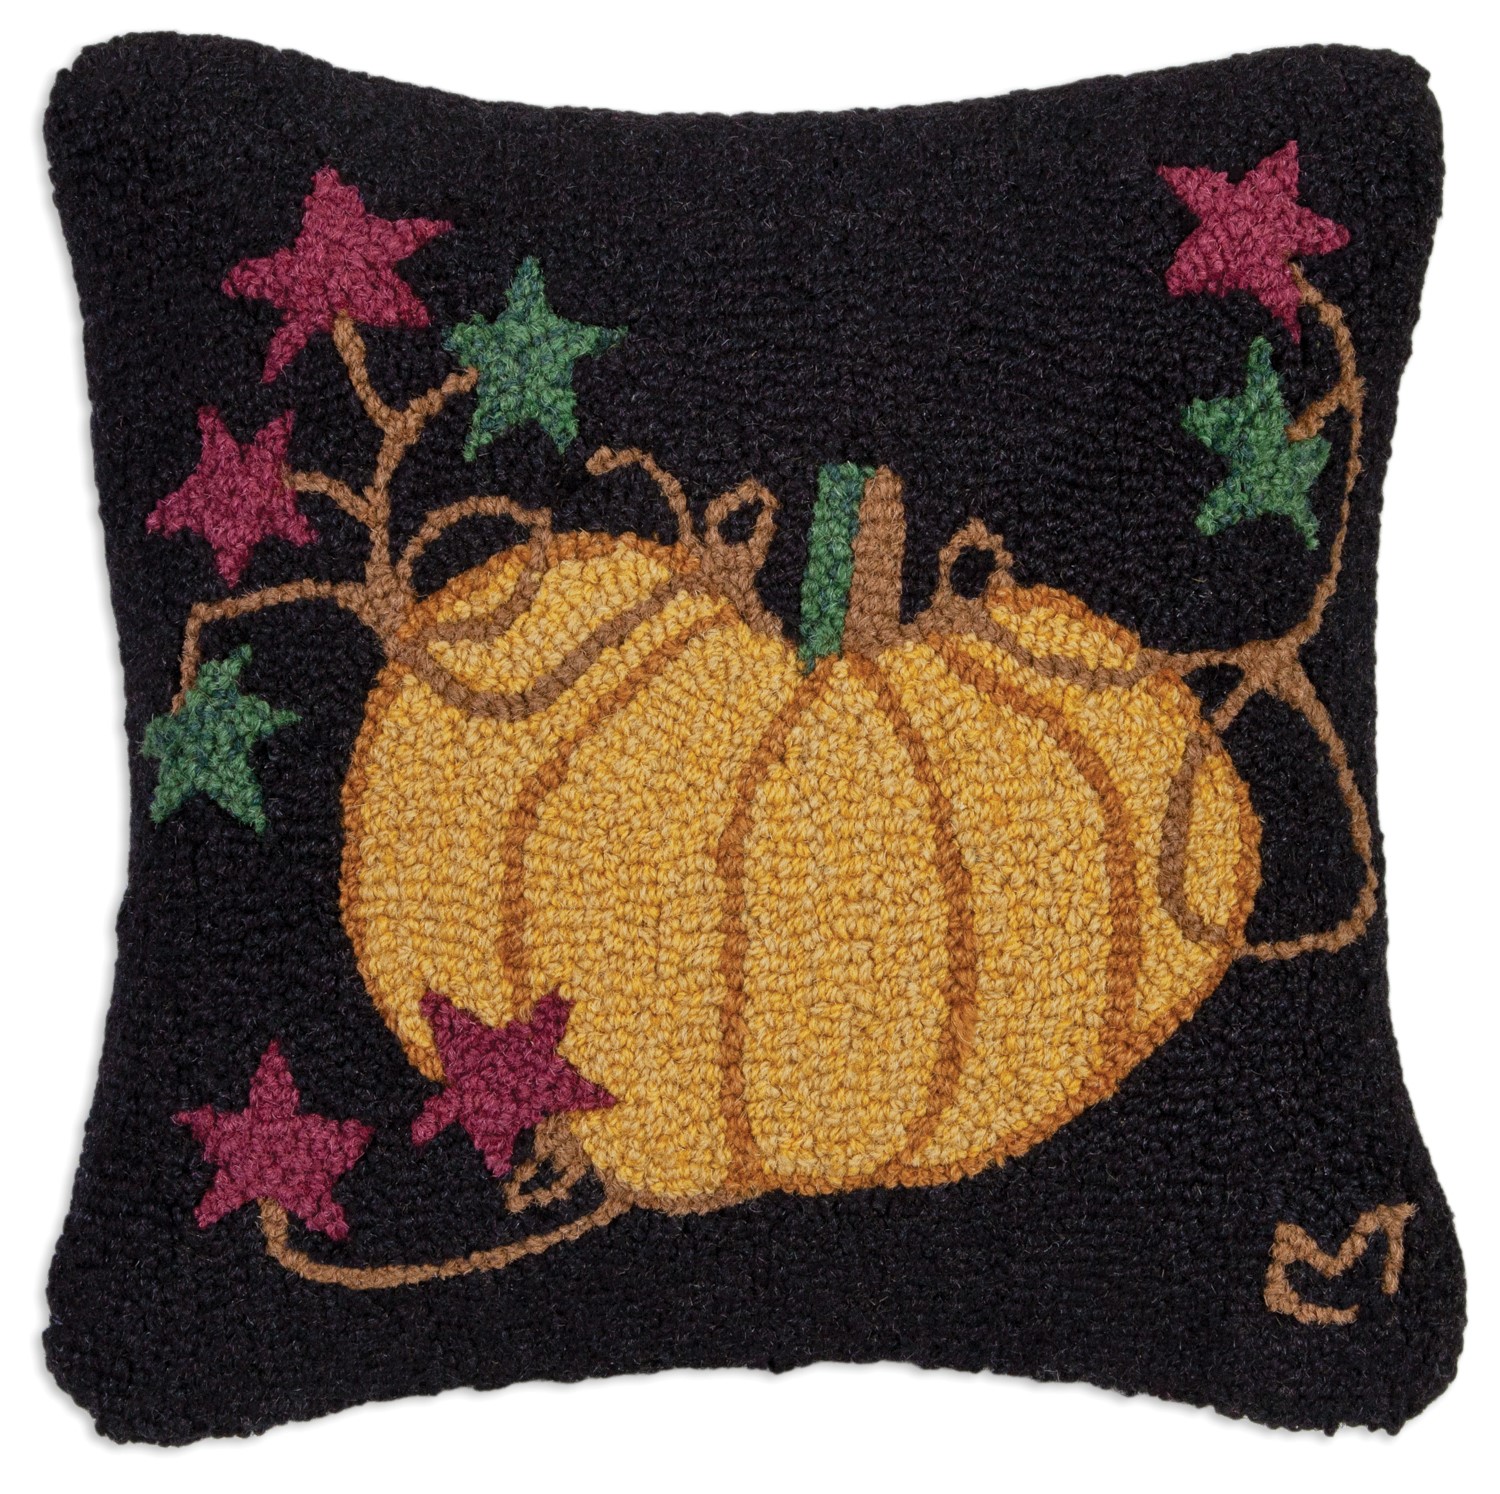 Embroidered Throw Pillow - Halloween Tis the Season